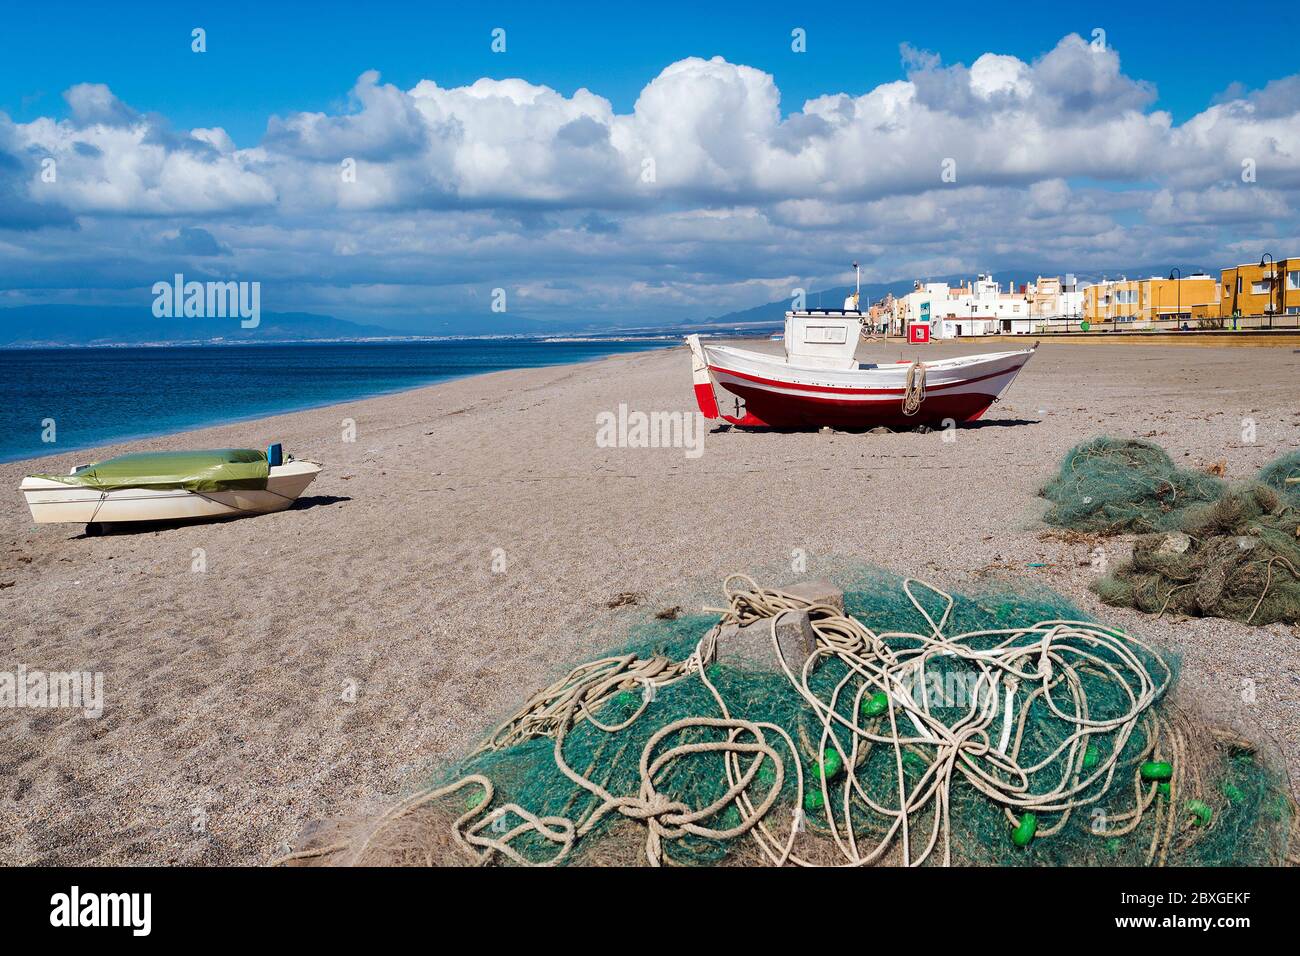 Bateau de pêche traditionnel sur la plage, Cabo de Gata, province d'Almeria, Andalousie, Espagne Banque D'Images